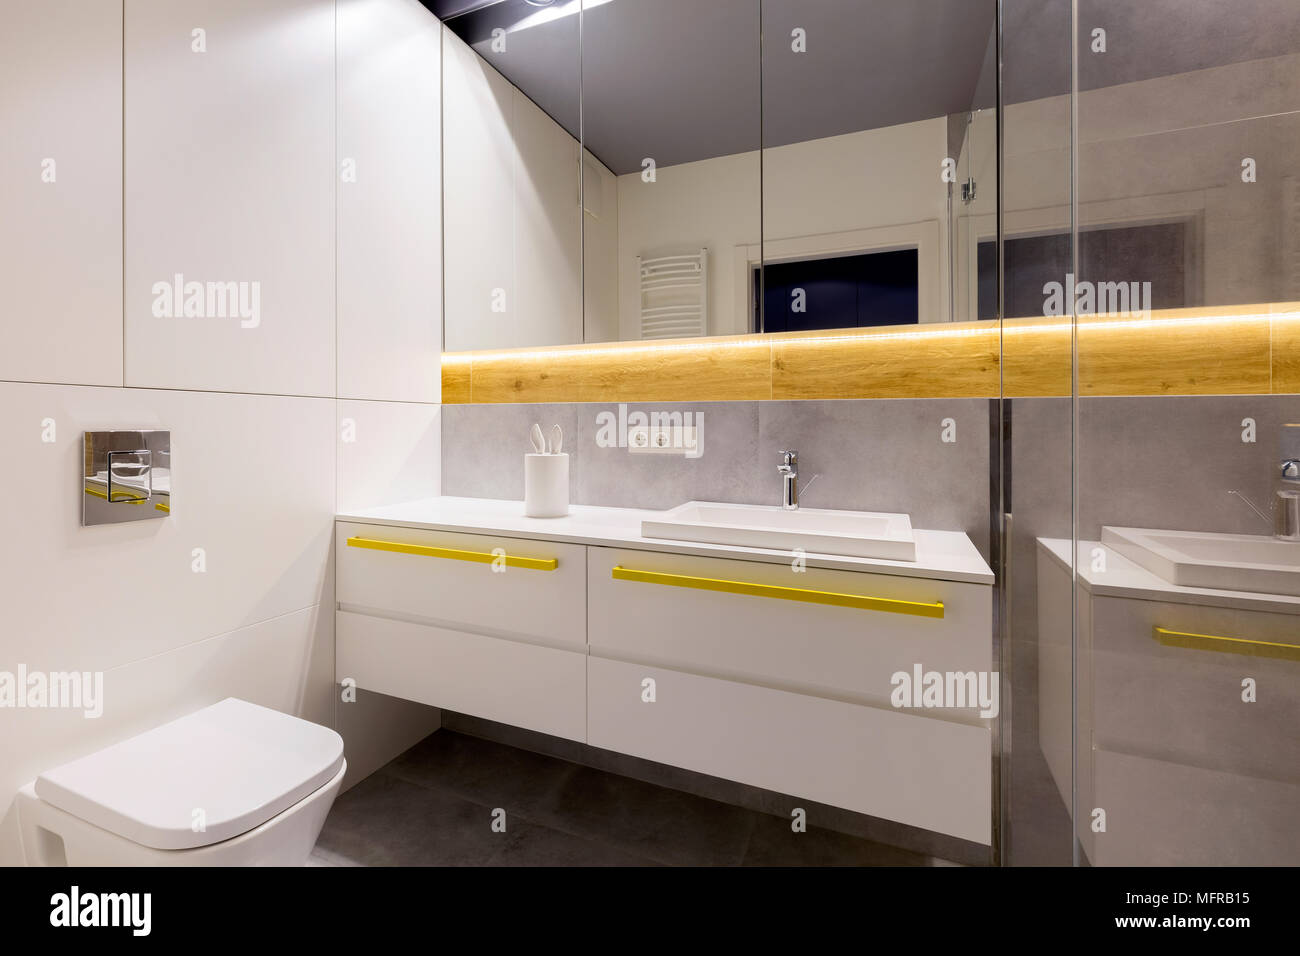 Sauberes, modernes Badezimmer mit Wc, Weißes Gehäuse, gelbe Griffe, Spiegel und grauen Fliesen Stockfoto